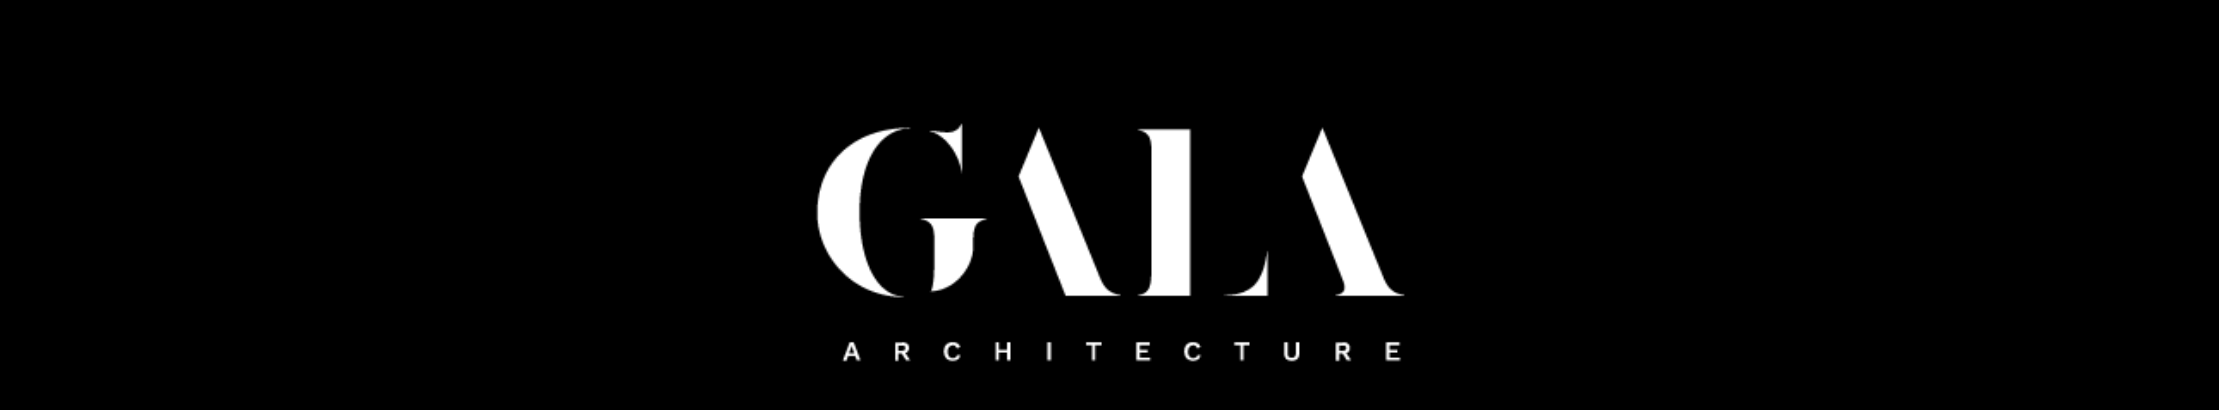 GALA Architecture's profile banner